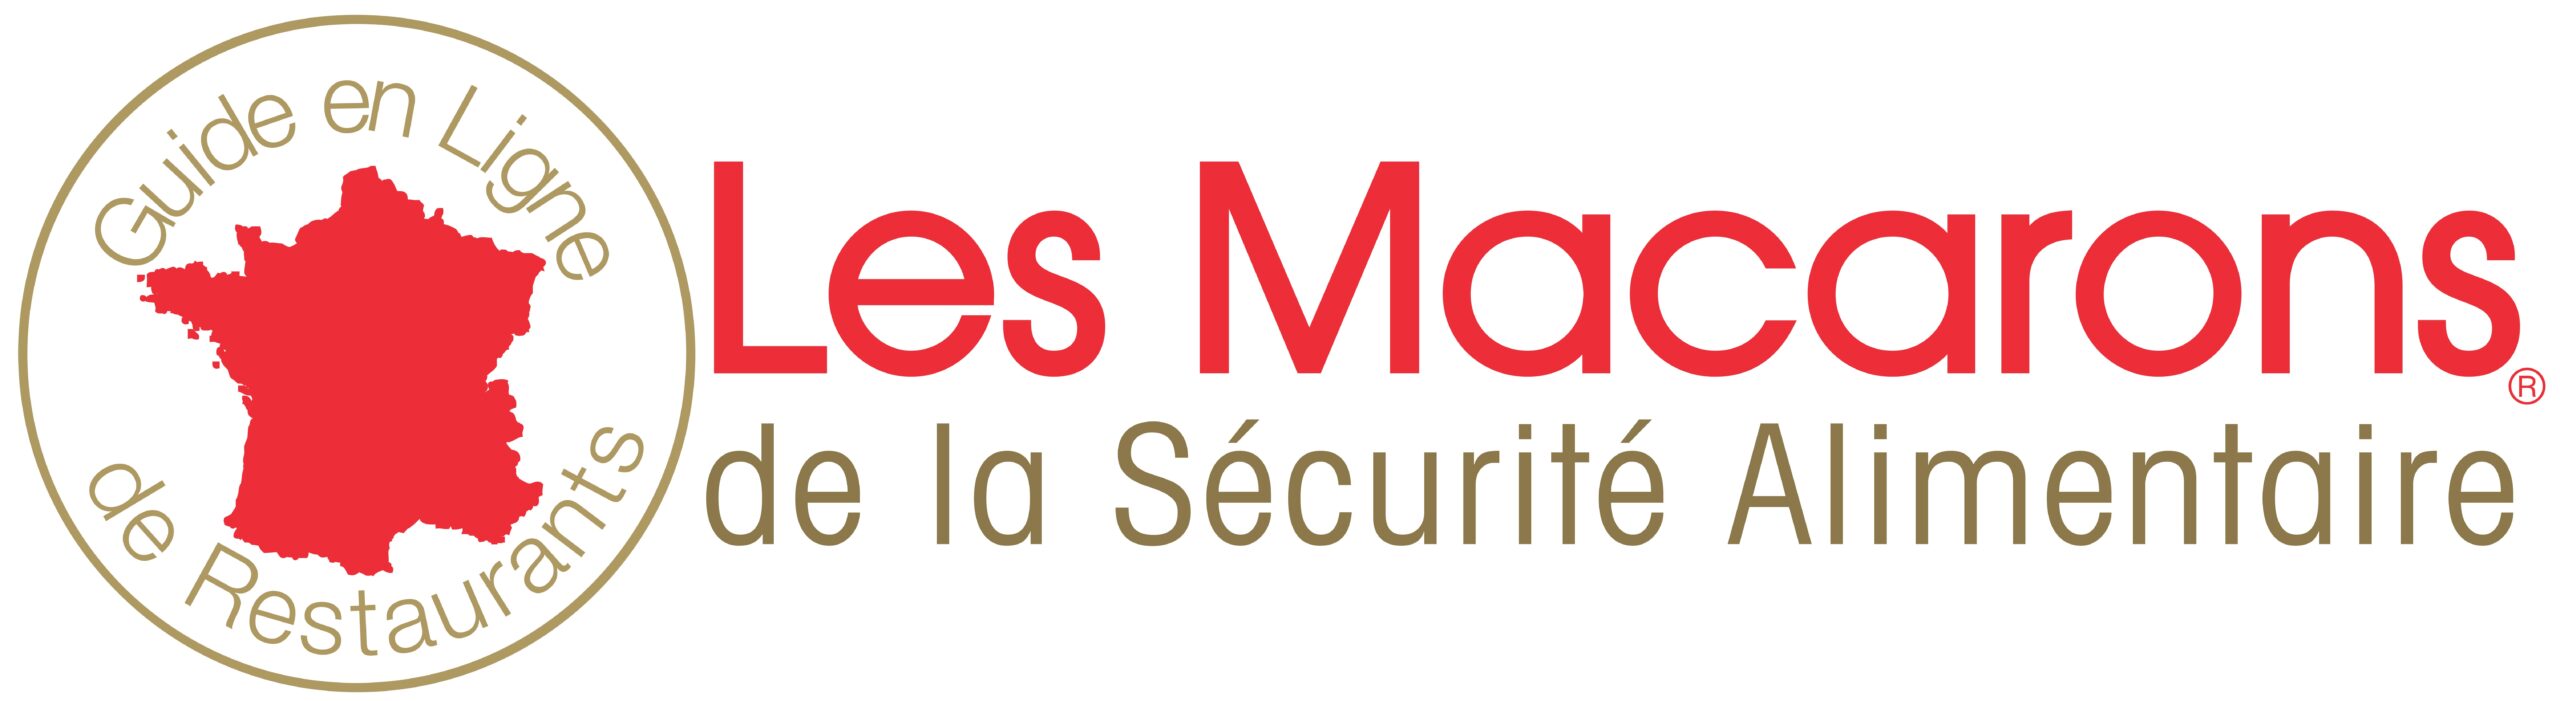 Logo Les Macarons pour site